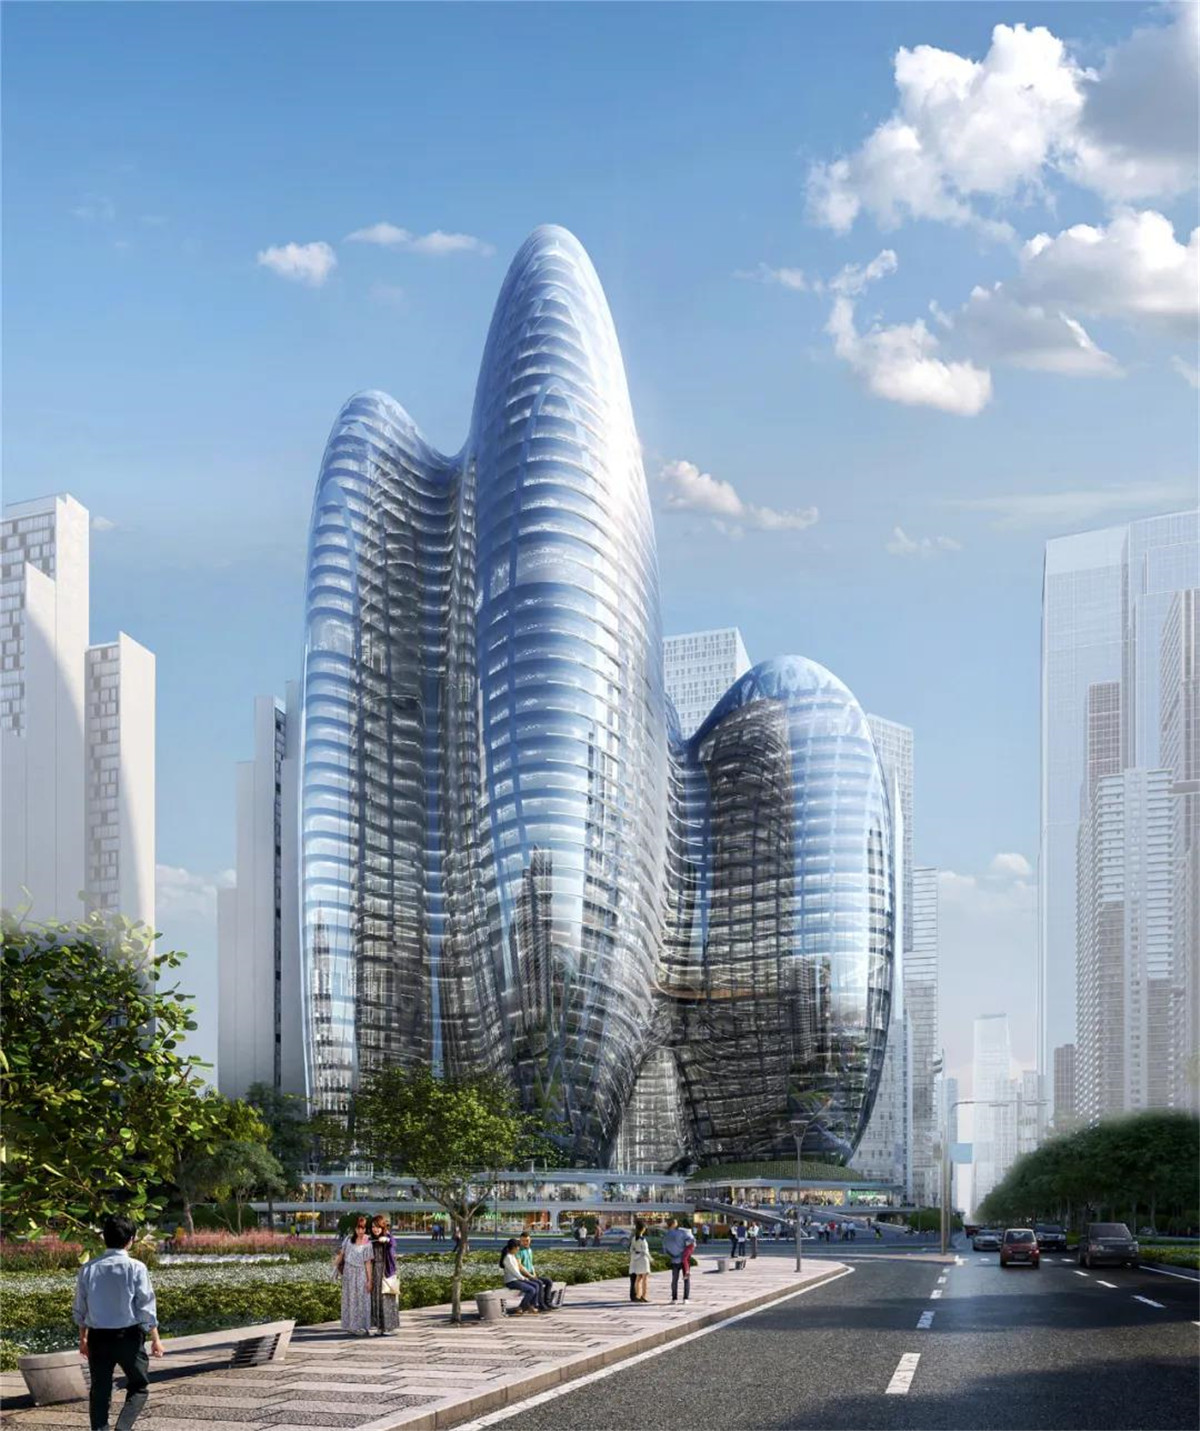 坐落在深圳湾的这些办公大楼展现了一幅新时代的图景